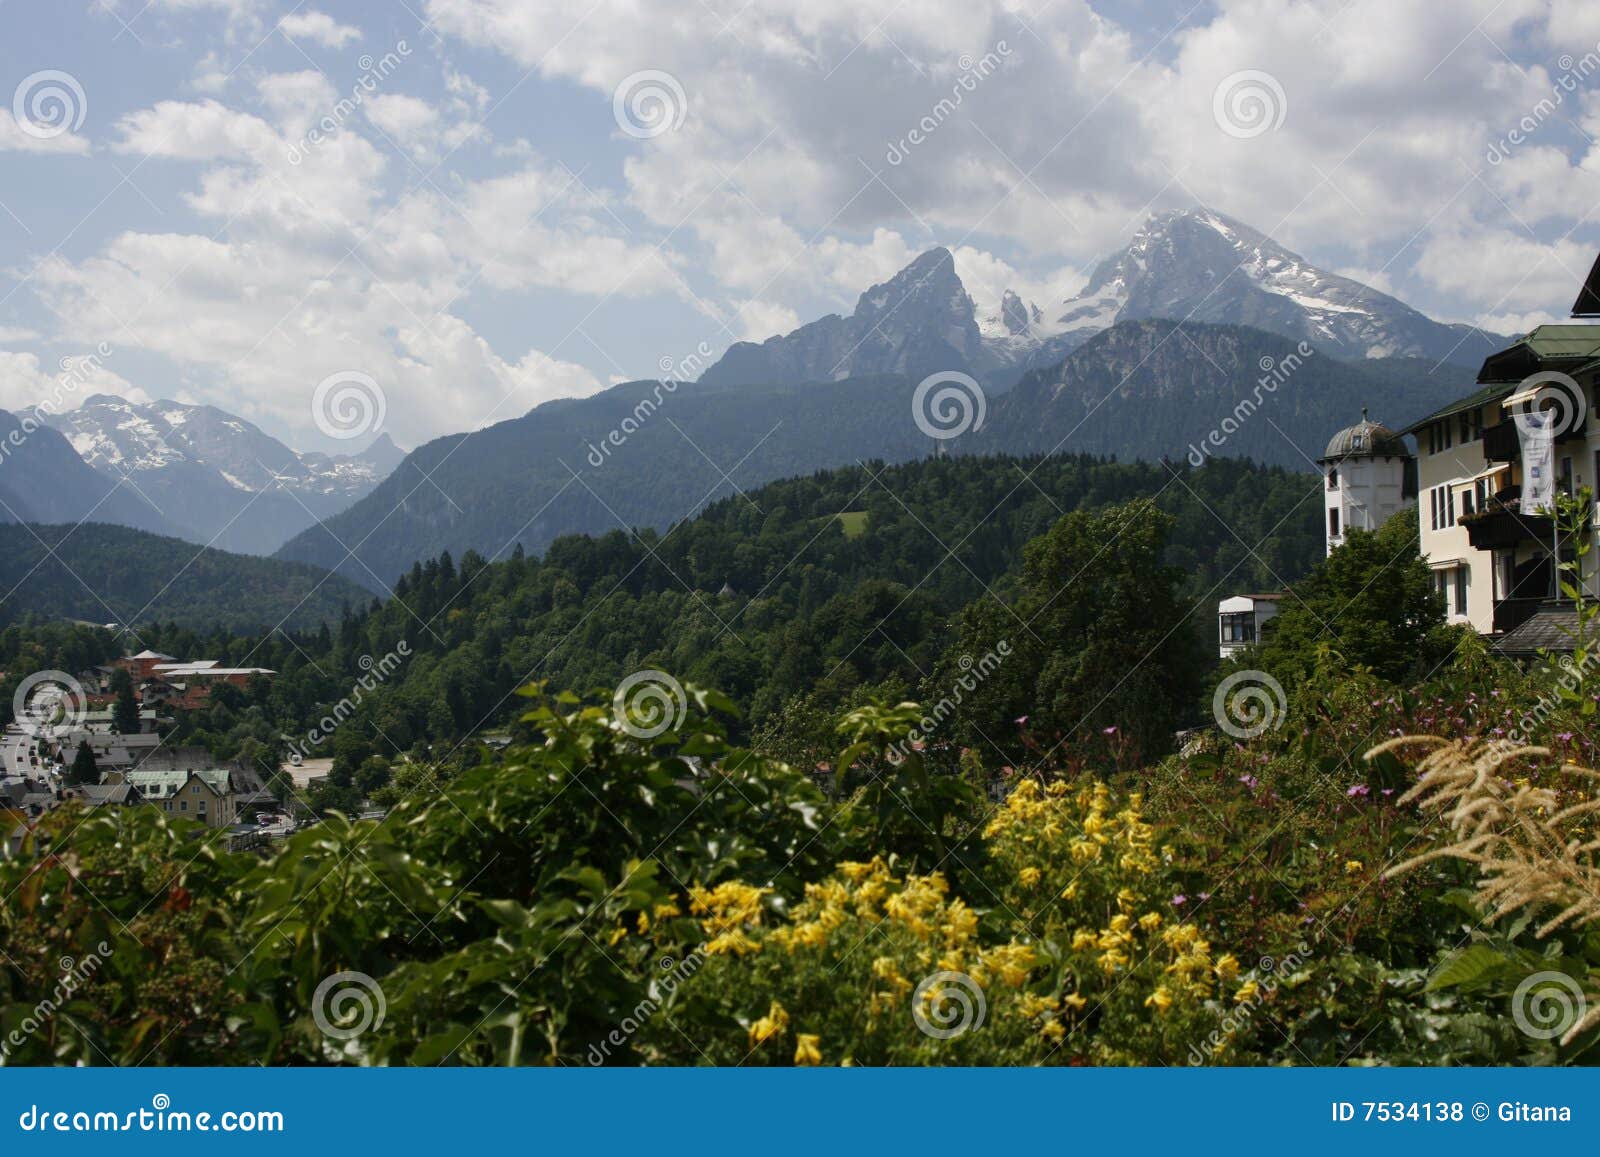 watzmann mountain, austria